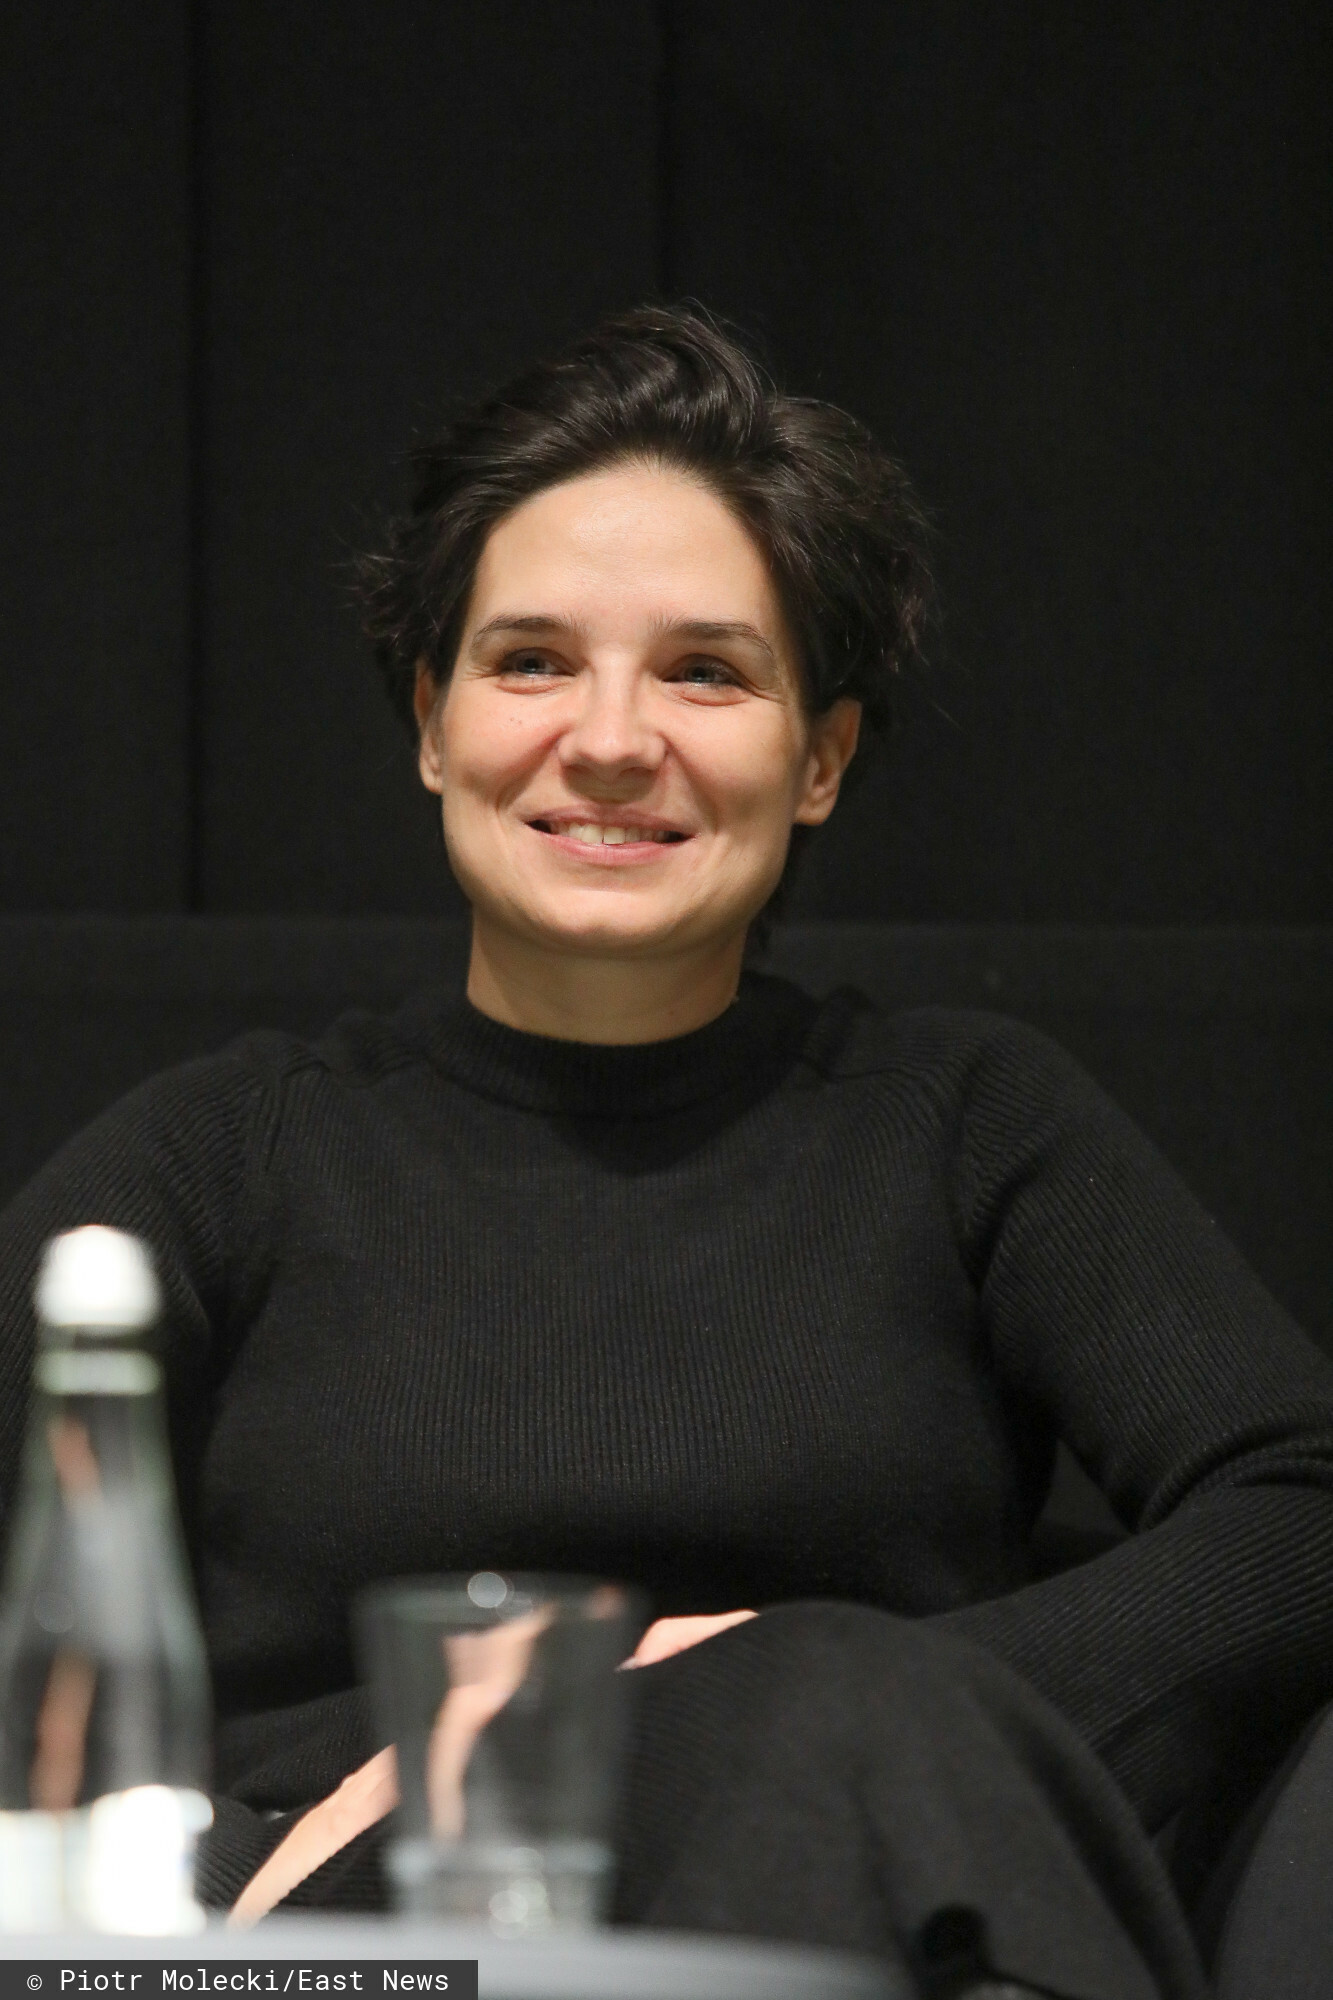 Agnieszka Smoczyńska (EA)